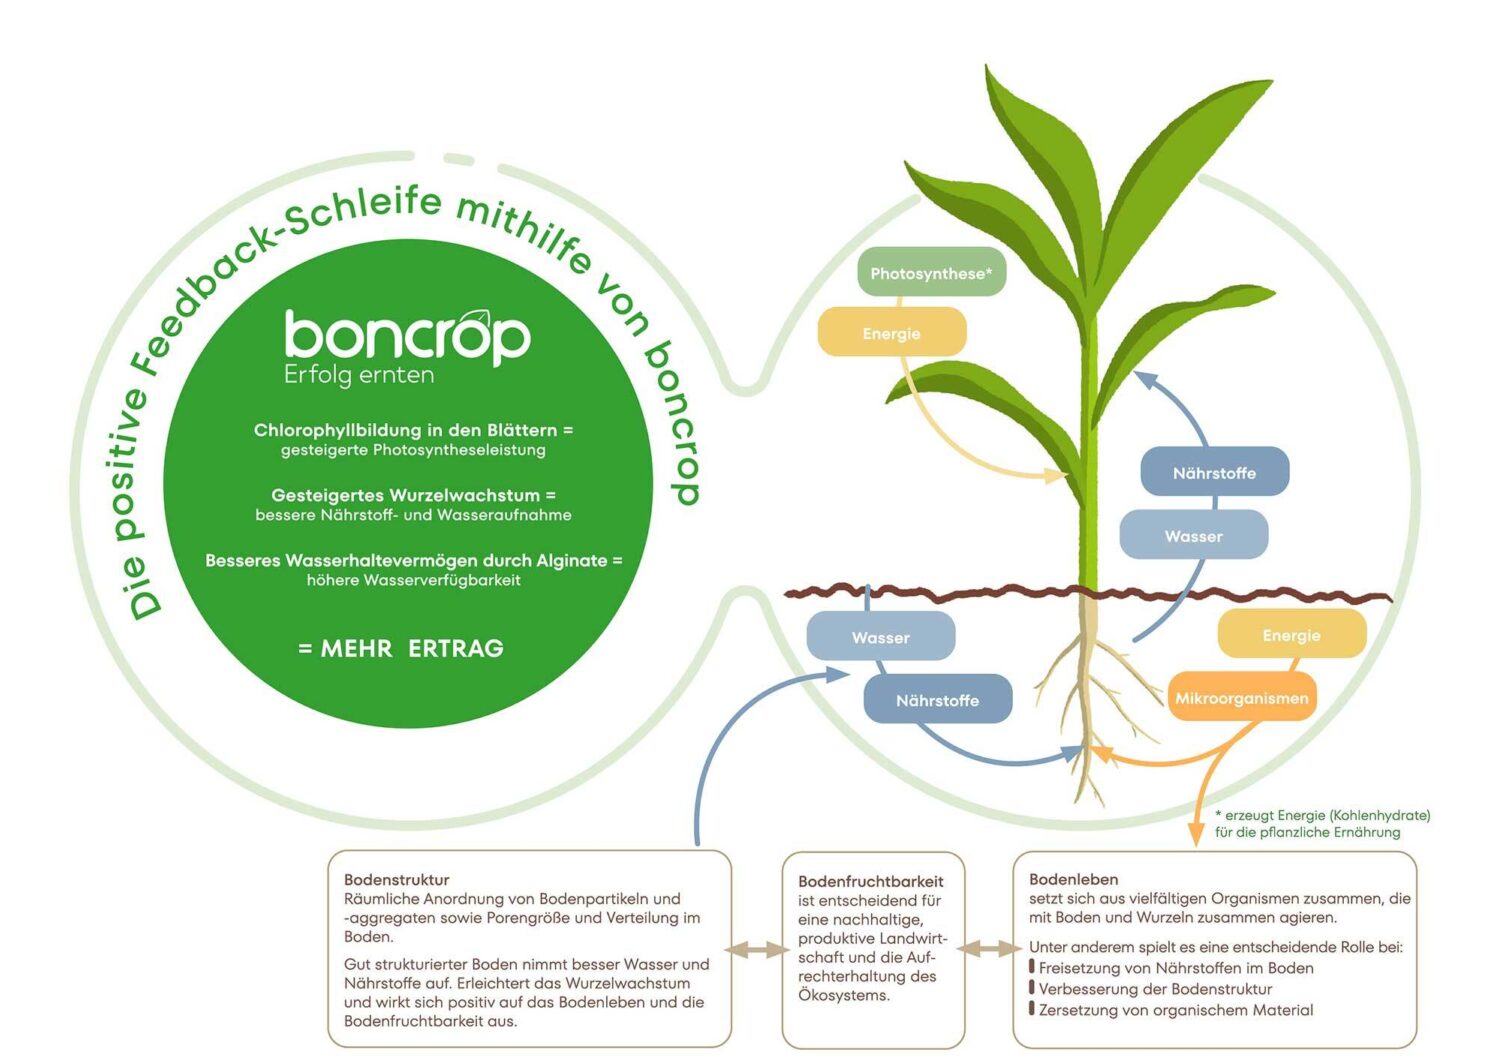 Vorteilhafte Auswirkungen von boncrop Biostimulanzien